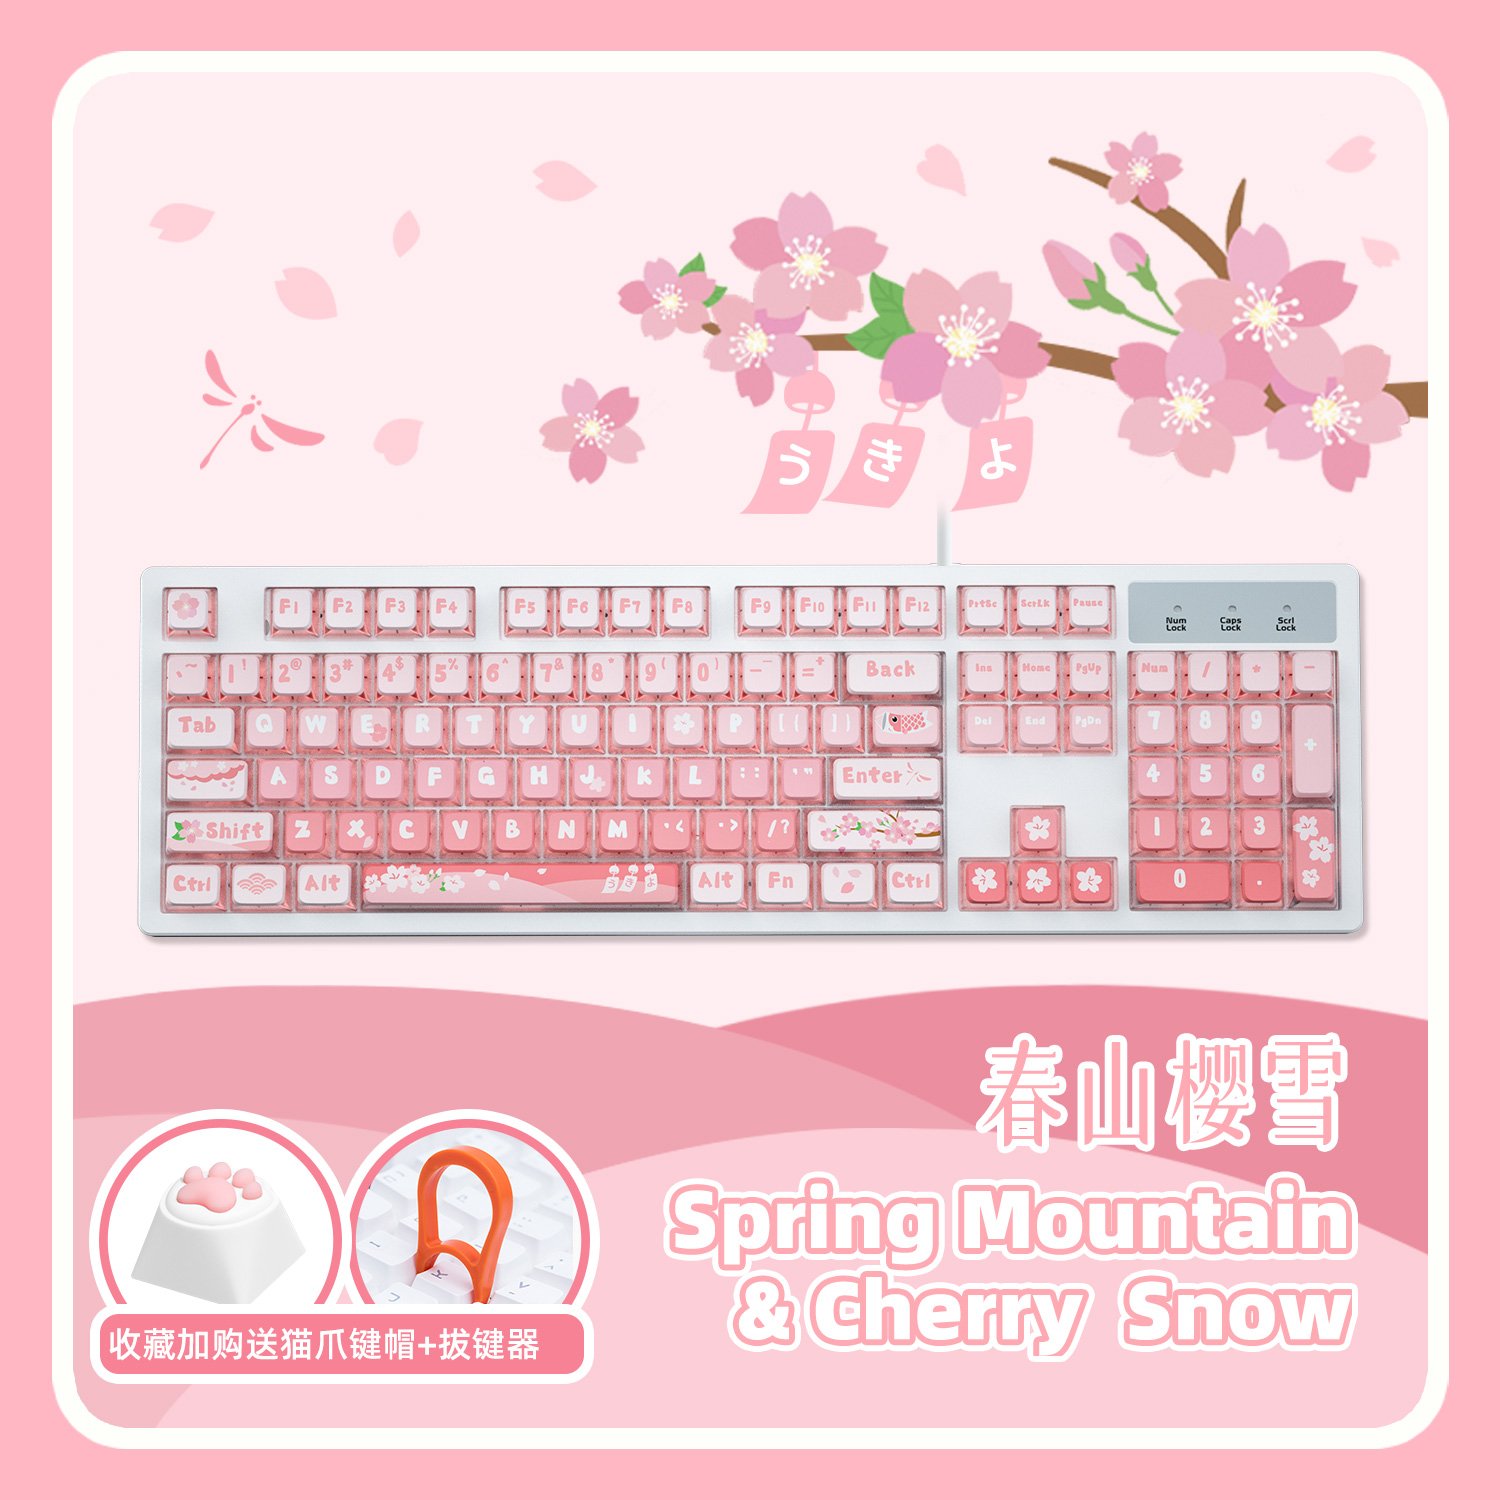 达尔优无线蓝牙机械键盘可爱女生粉色有线办公打字高颜值游戏2.4G